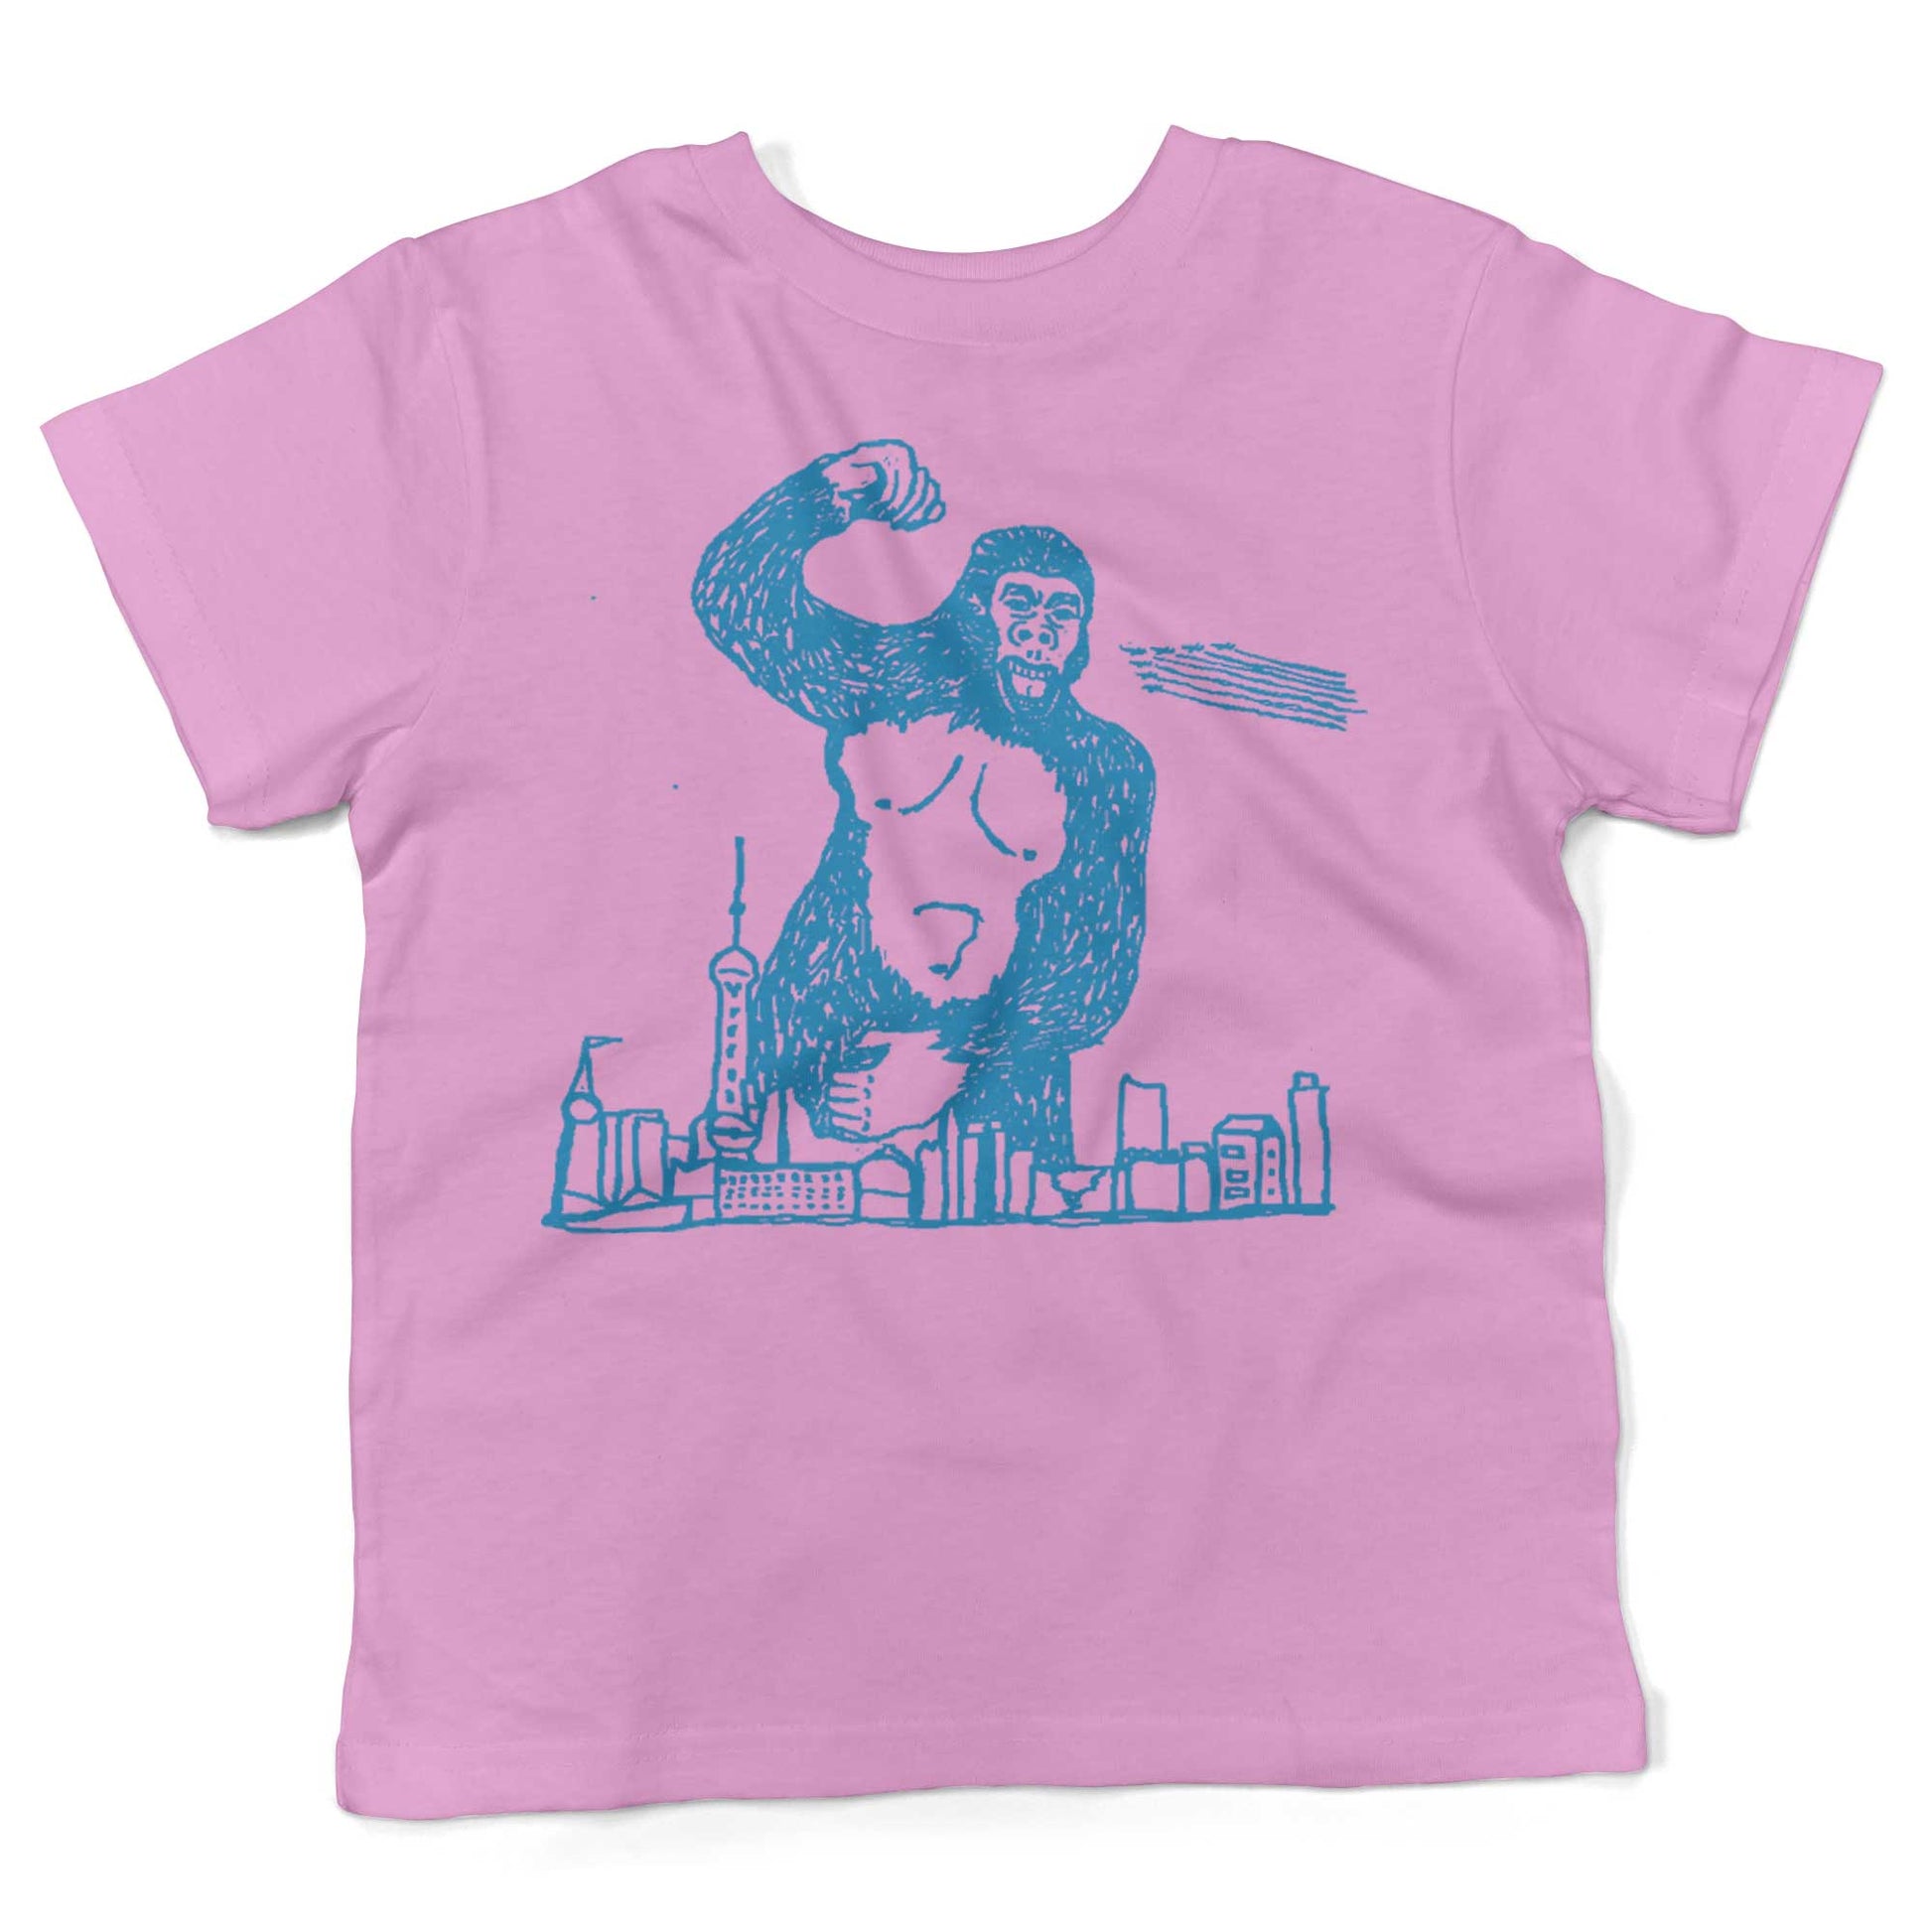 Giant Gorilla Drawing Toddler Shirt-Organic Pink-2T